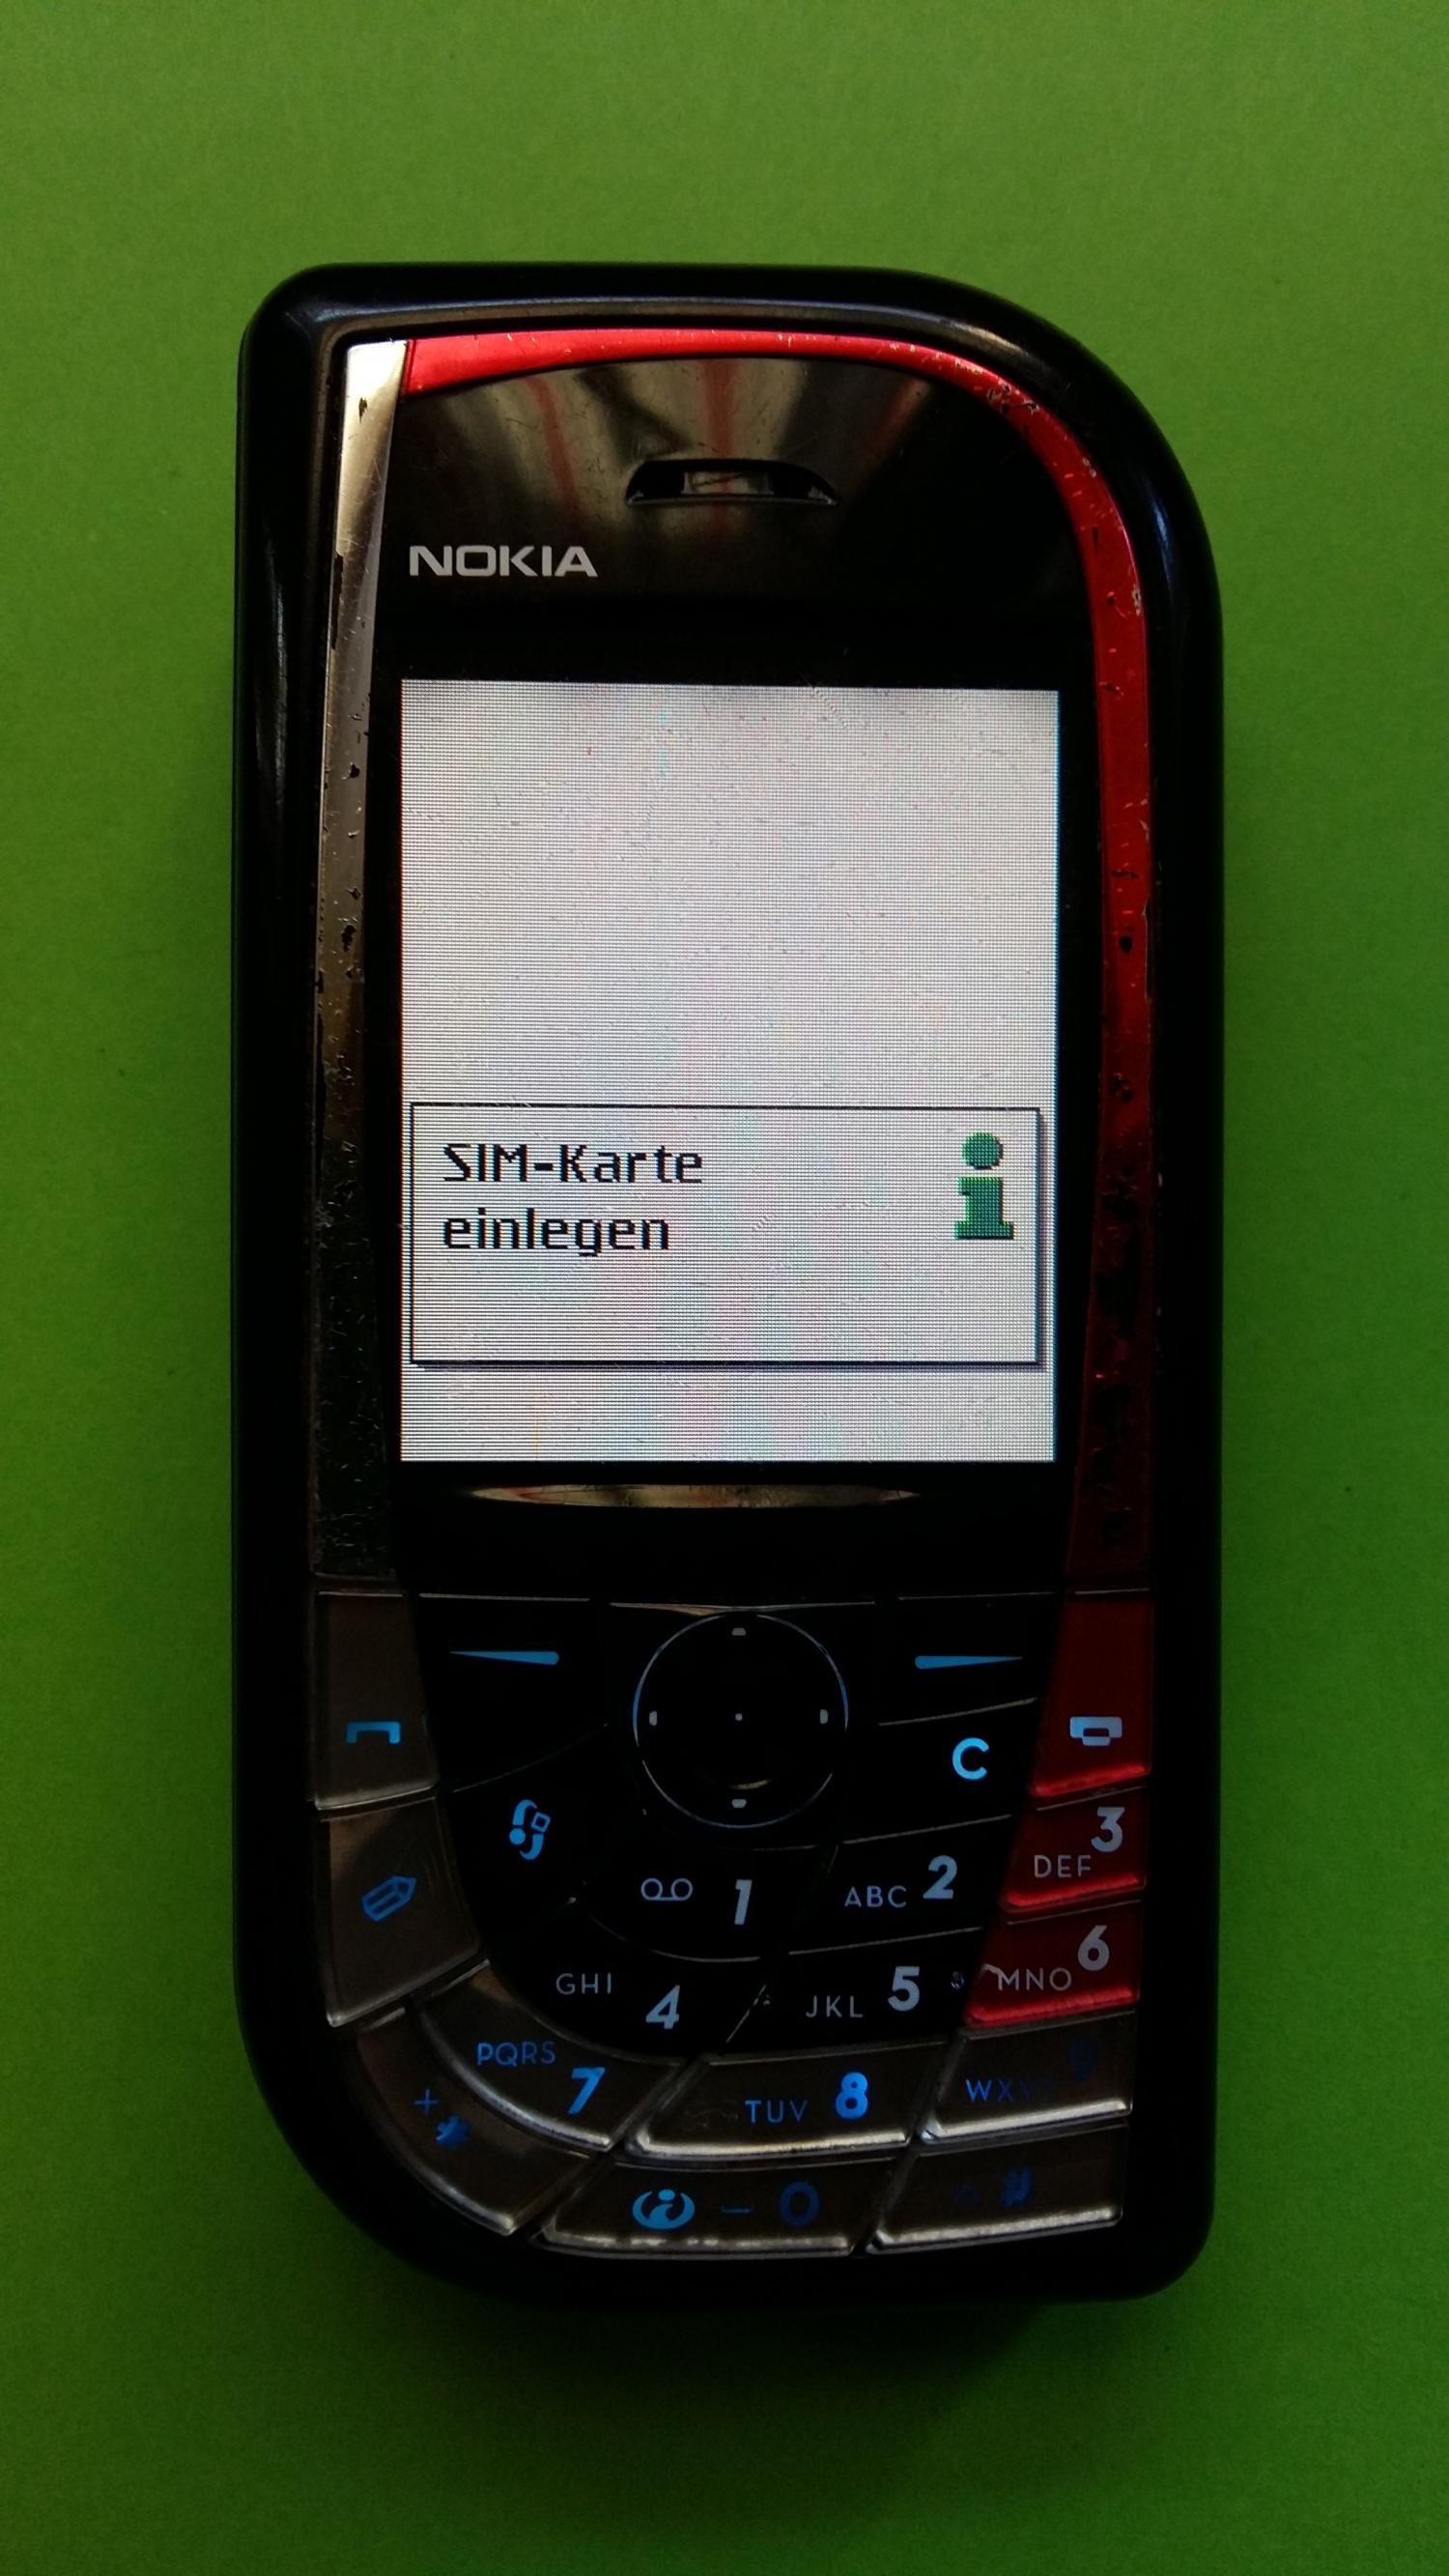 image-7330659-Nokia 7610 (1)1.jpg